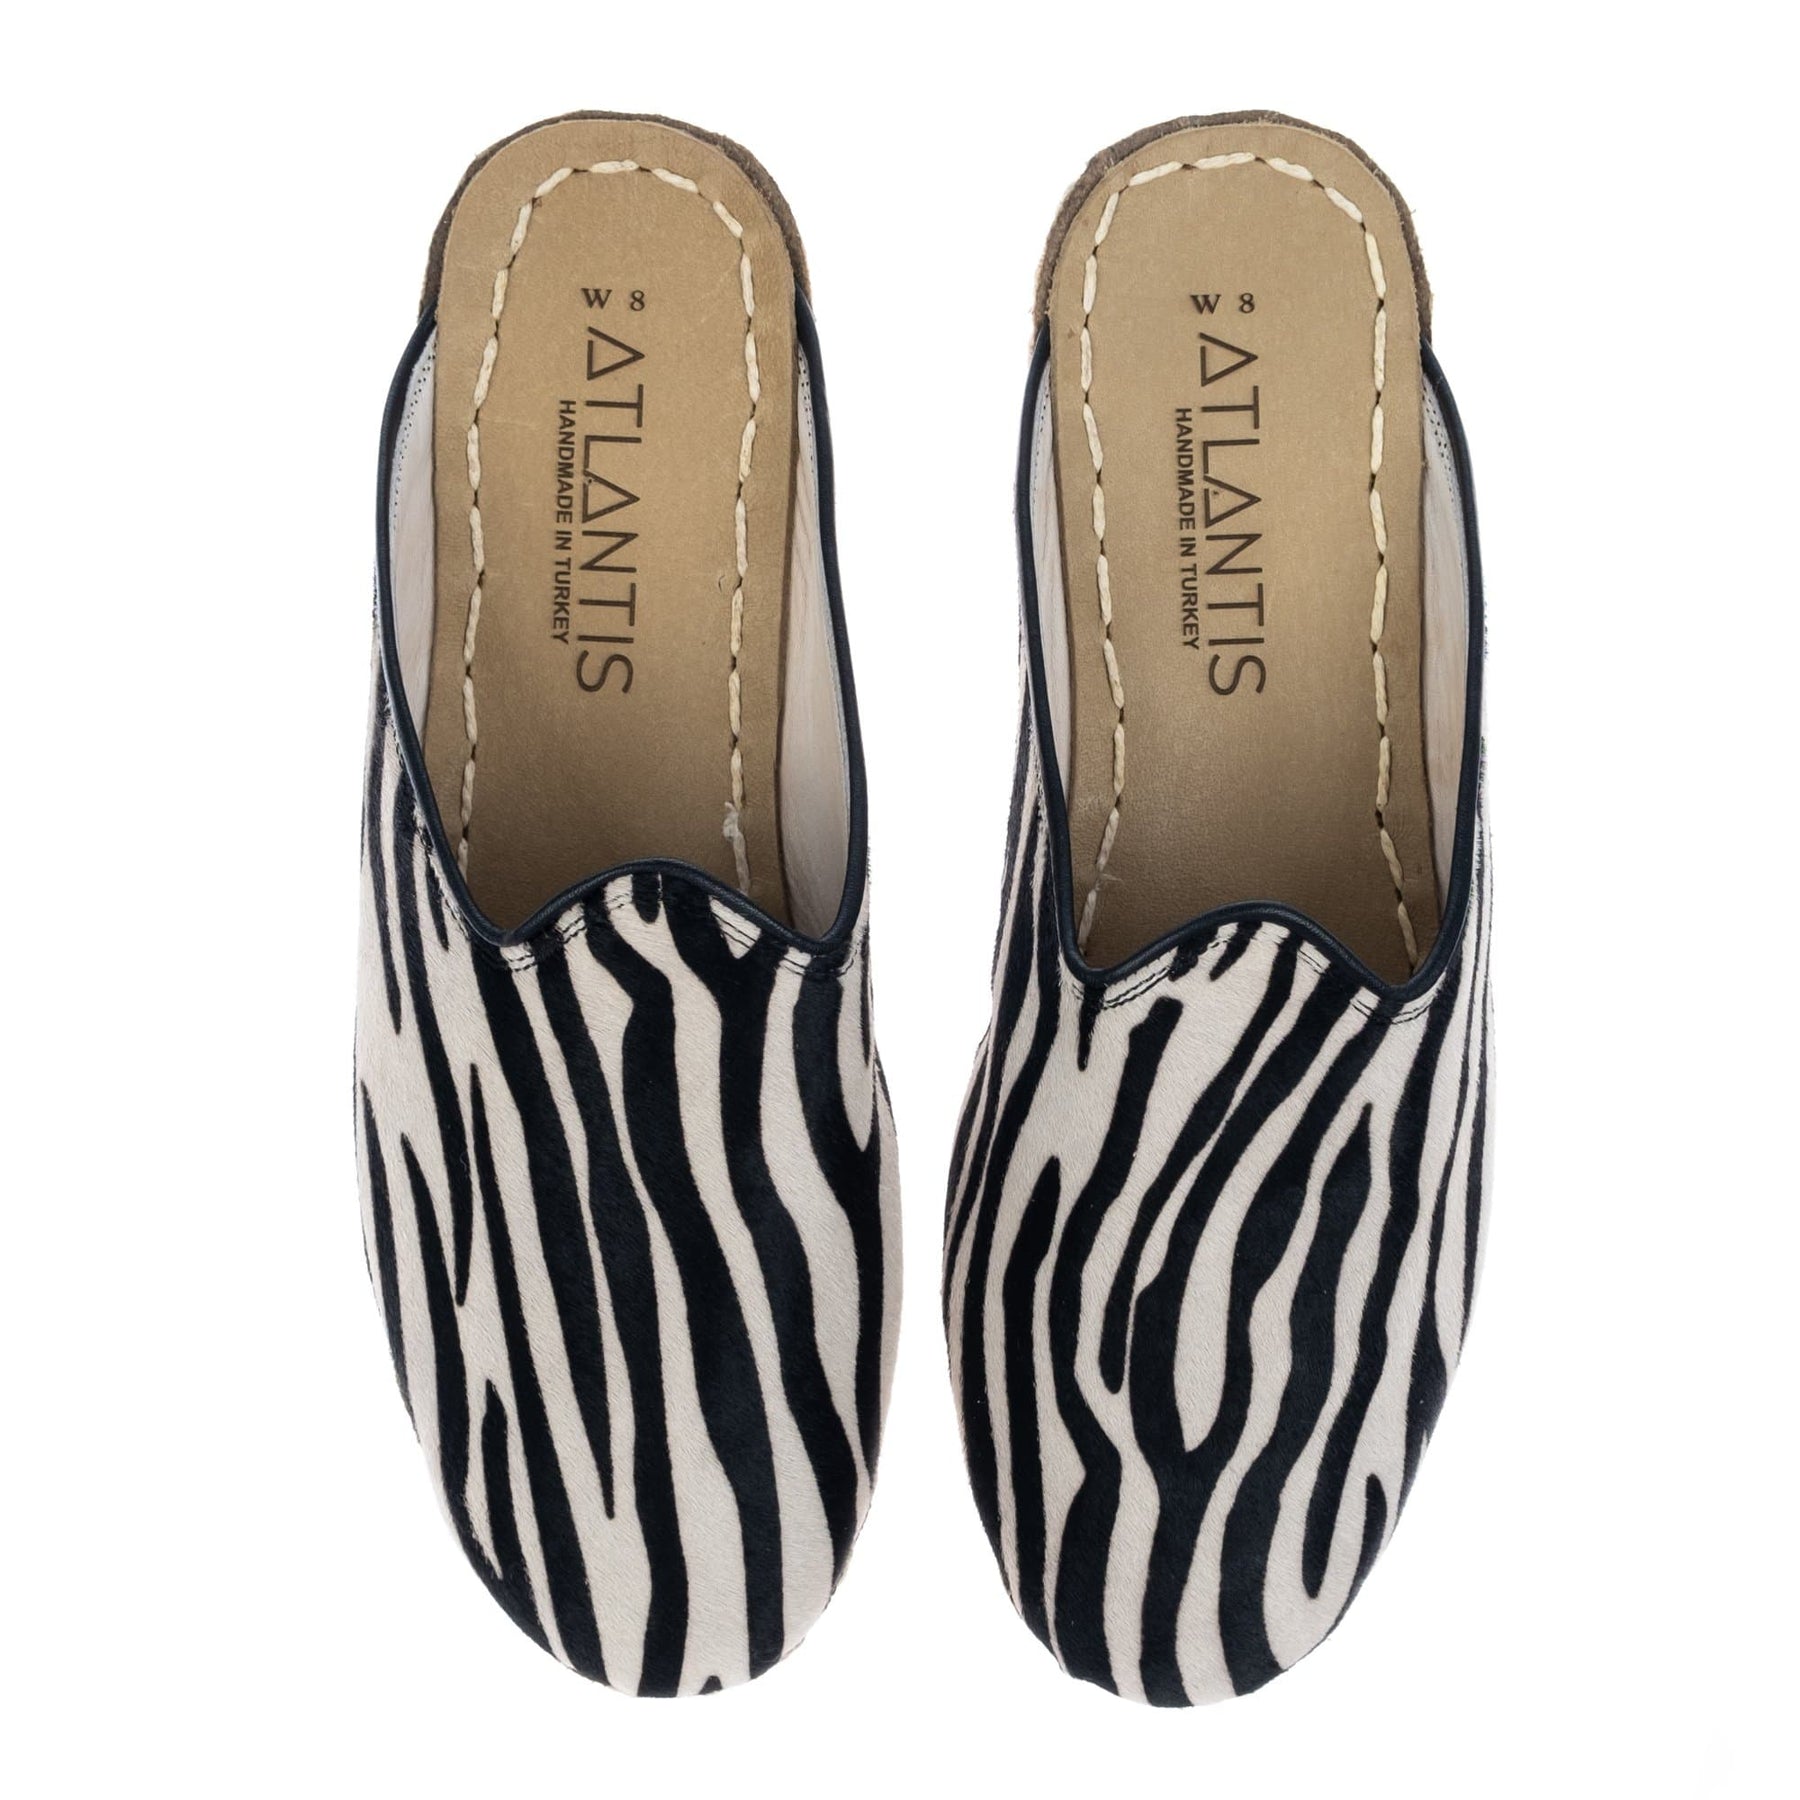 Men's Zebra Slippers - Turkish for : Atlantis Handmade – Atlantis Handmade Shoes